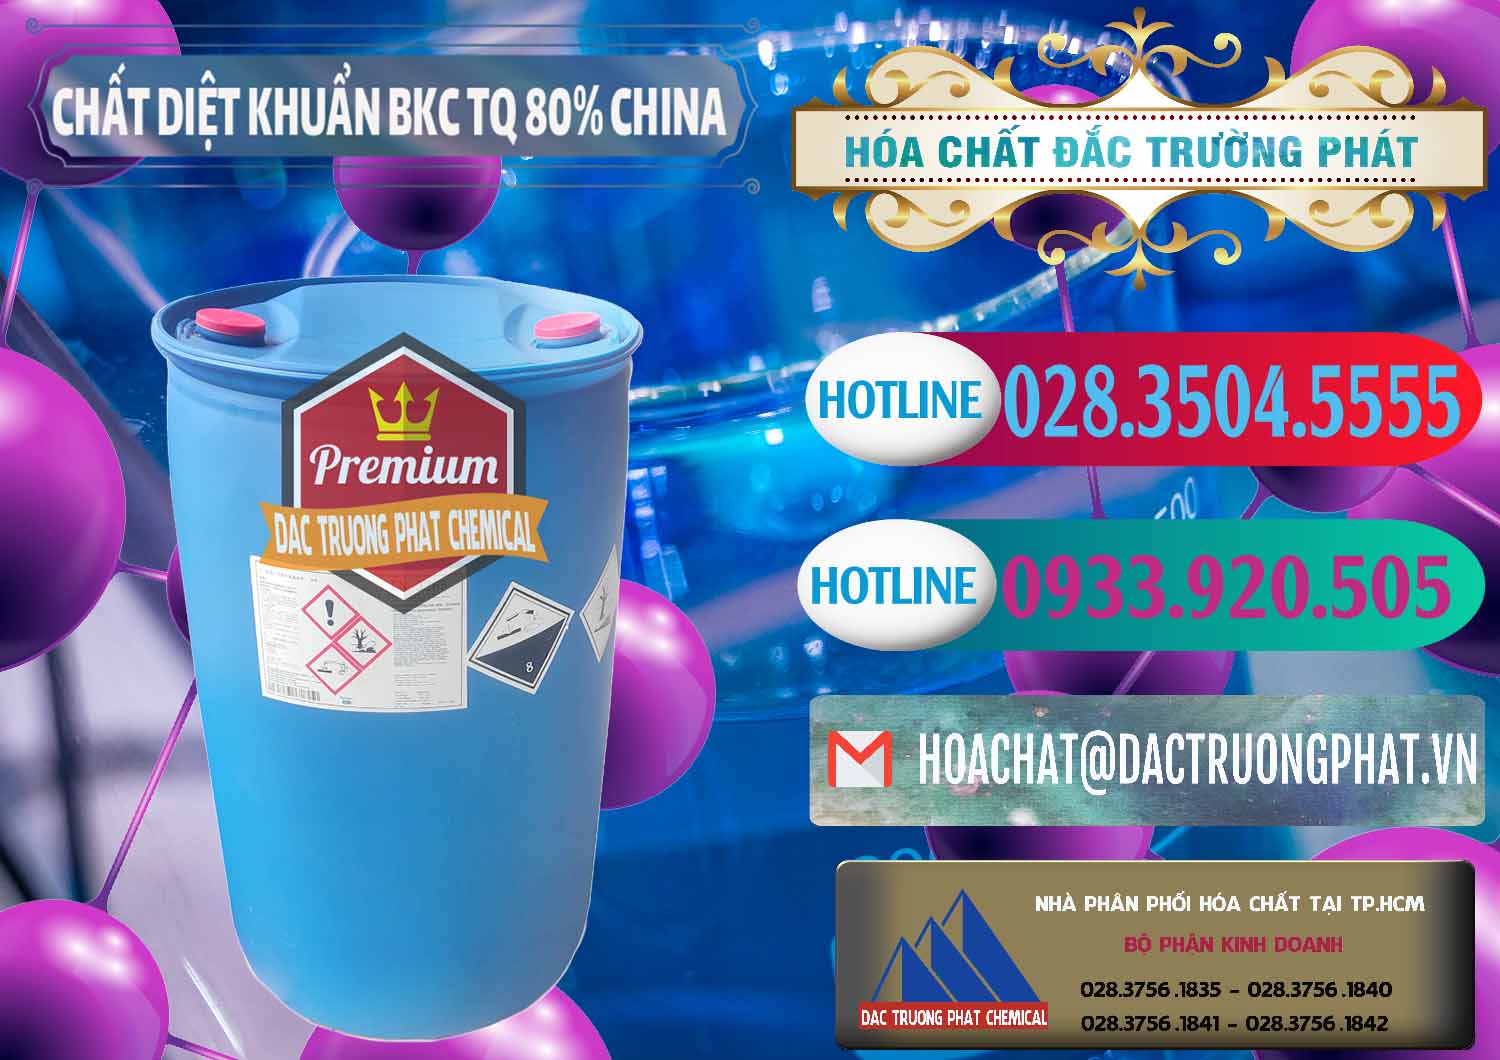 Chuyên kinh doanh & bán BKC - Benzalkonium Chloride 80% Trung Quốc China - 0310 - Công ty chuyên cung cấp & nhập khẩu hóa chất tại TP.HCM - truongphat.vn